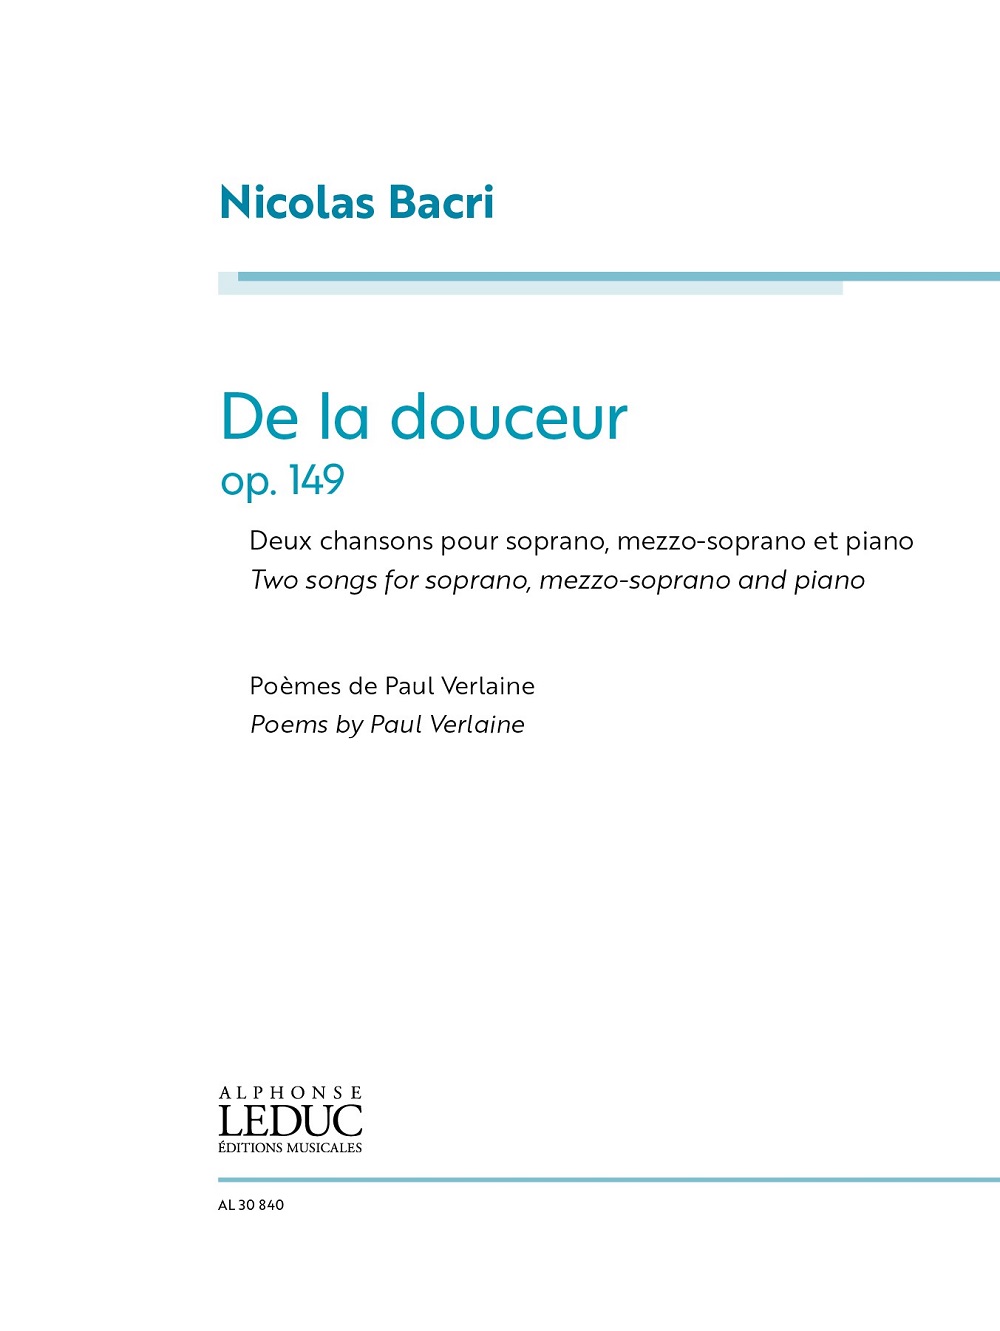 De la douceur, pour Soprano, Mezzo-Soprano and Piano. Vocal Score